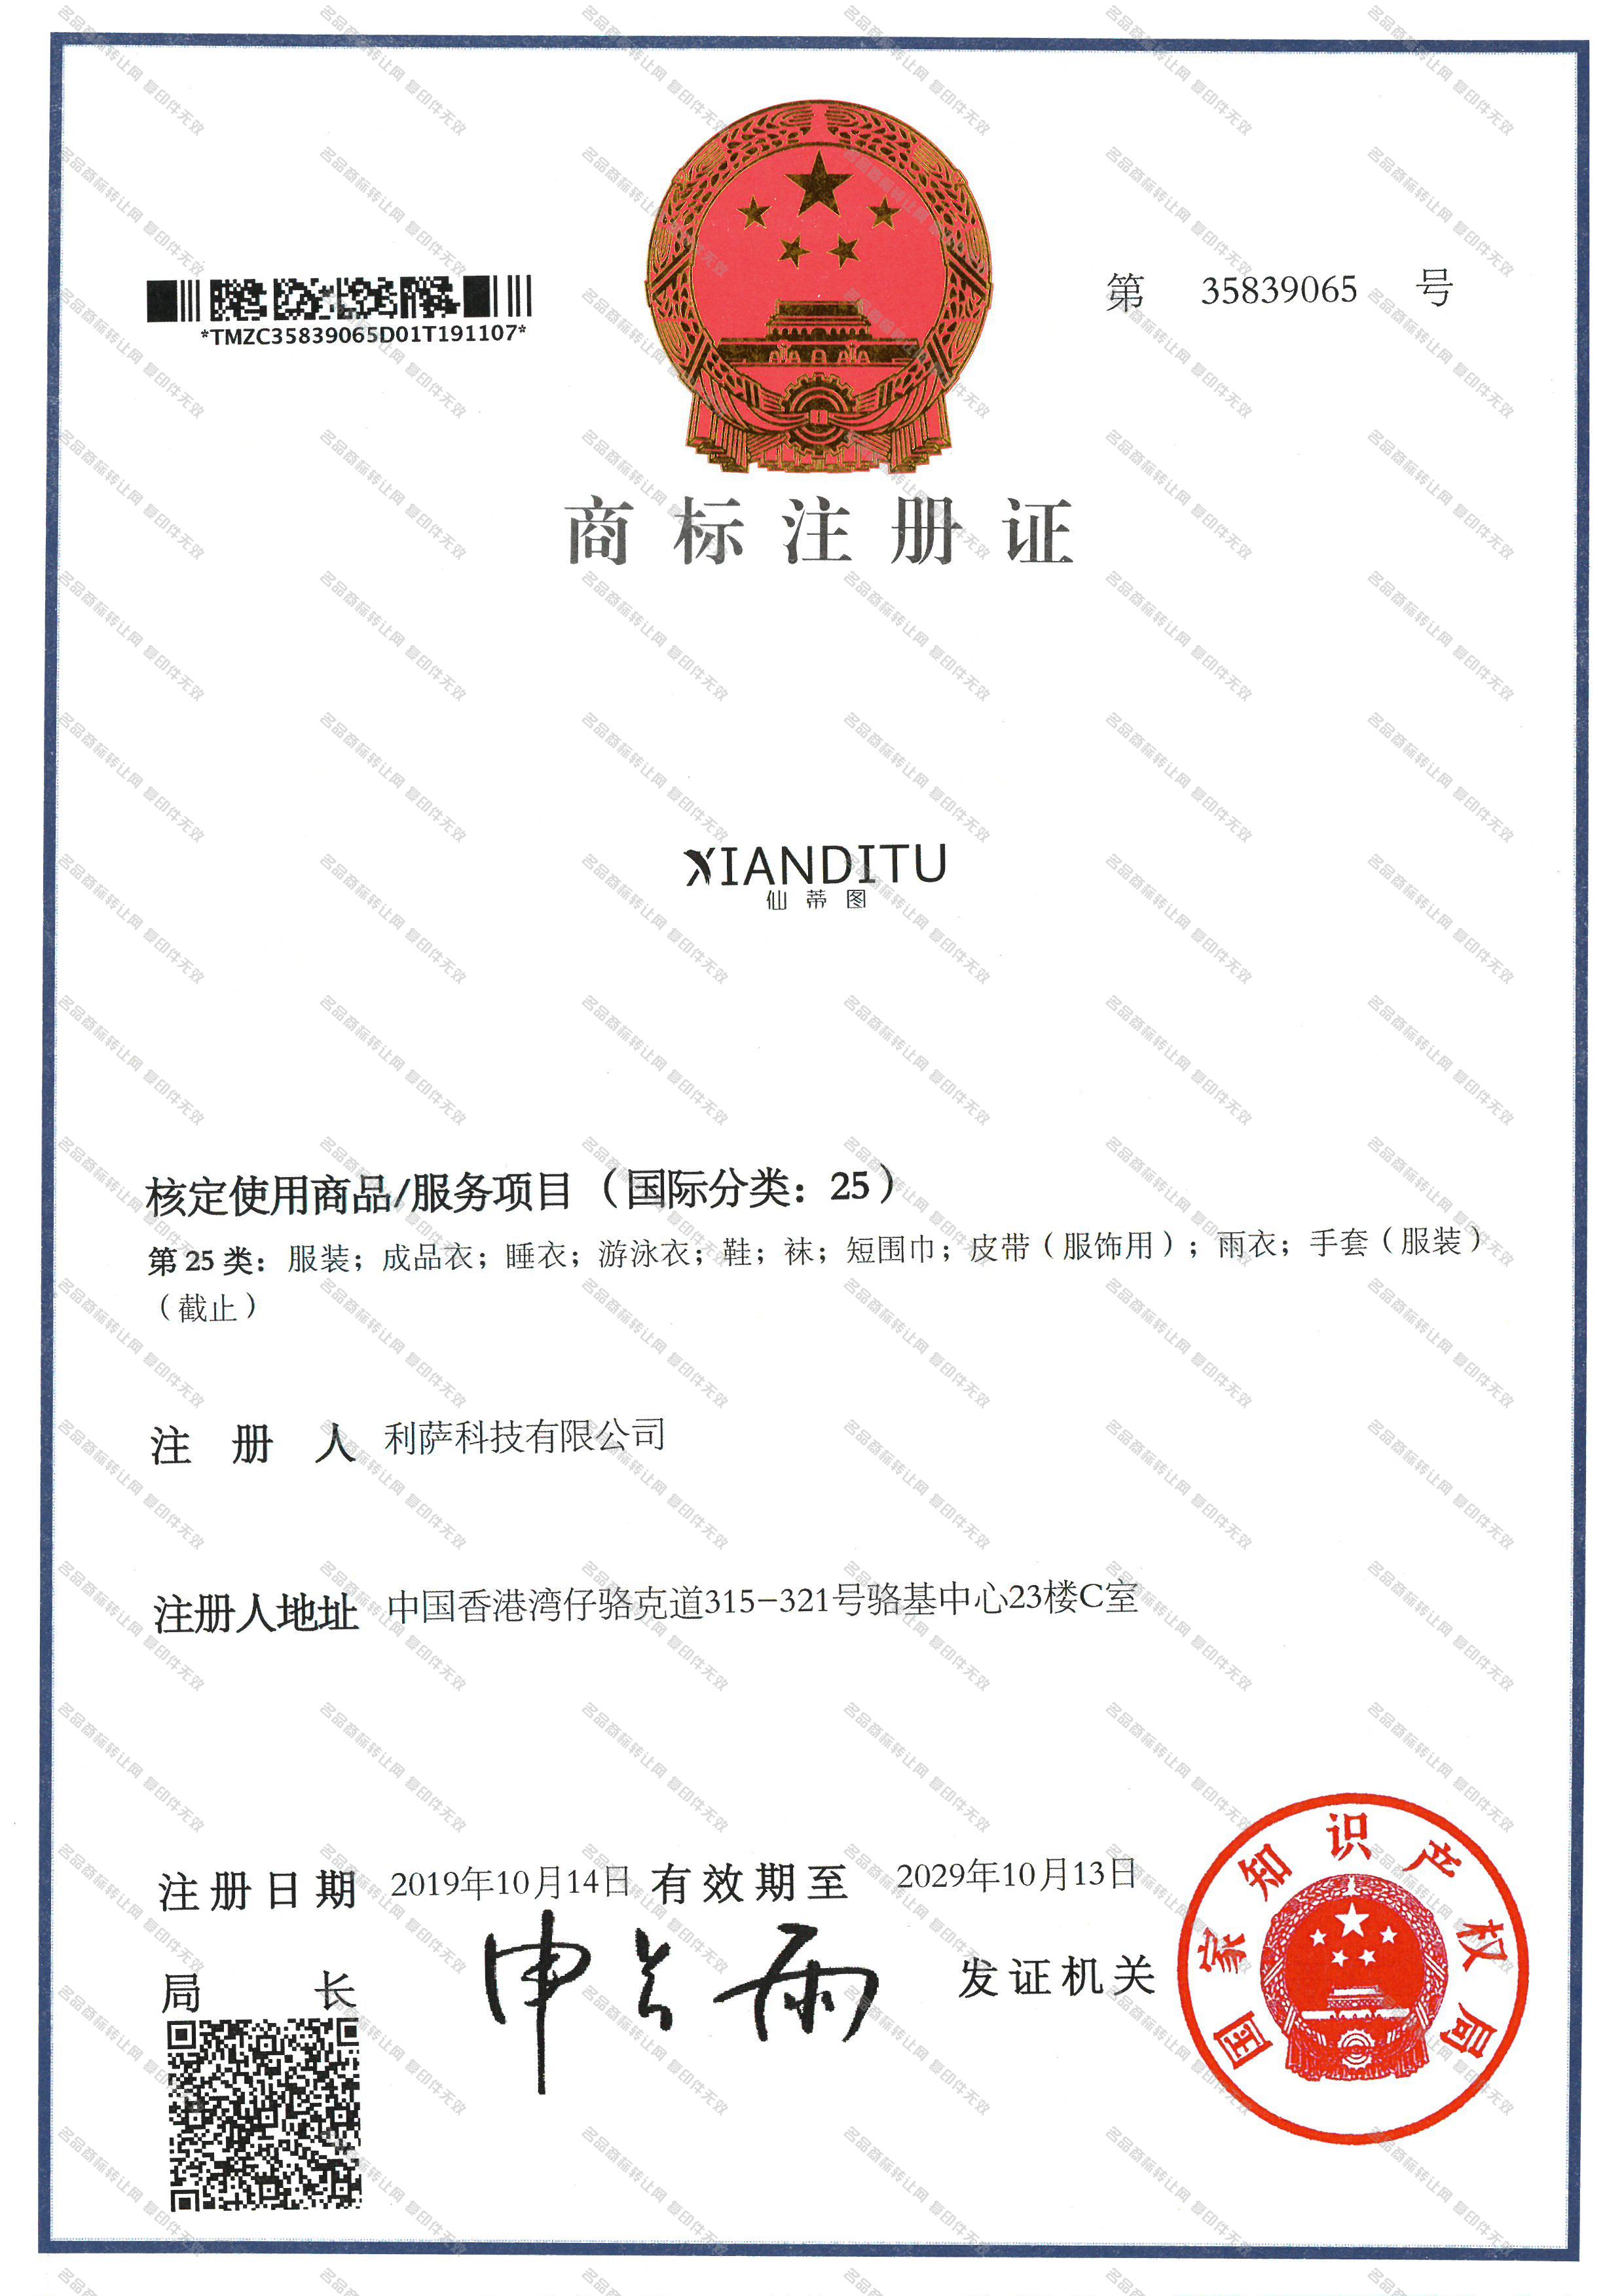 仙蒂图 XIANDITU注册证